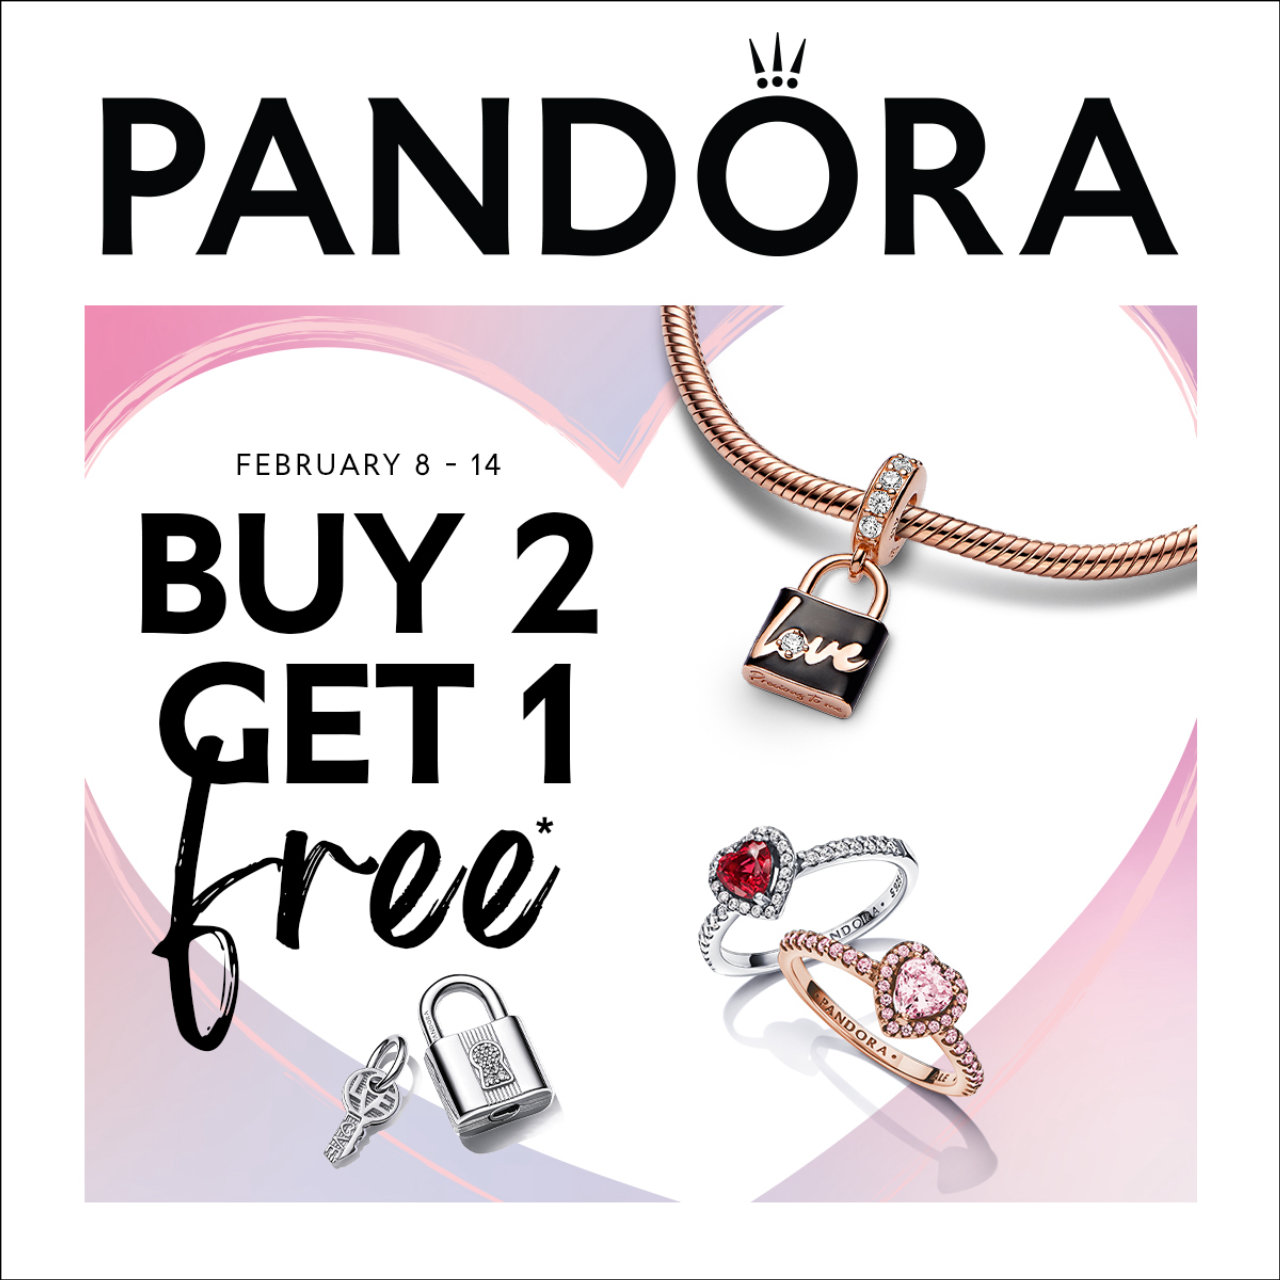 Pandora Campaign 76 BUY 2 GET 1 FREE EN 1280x1280 1